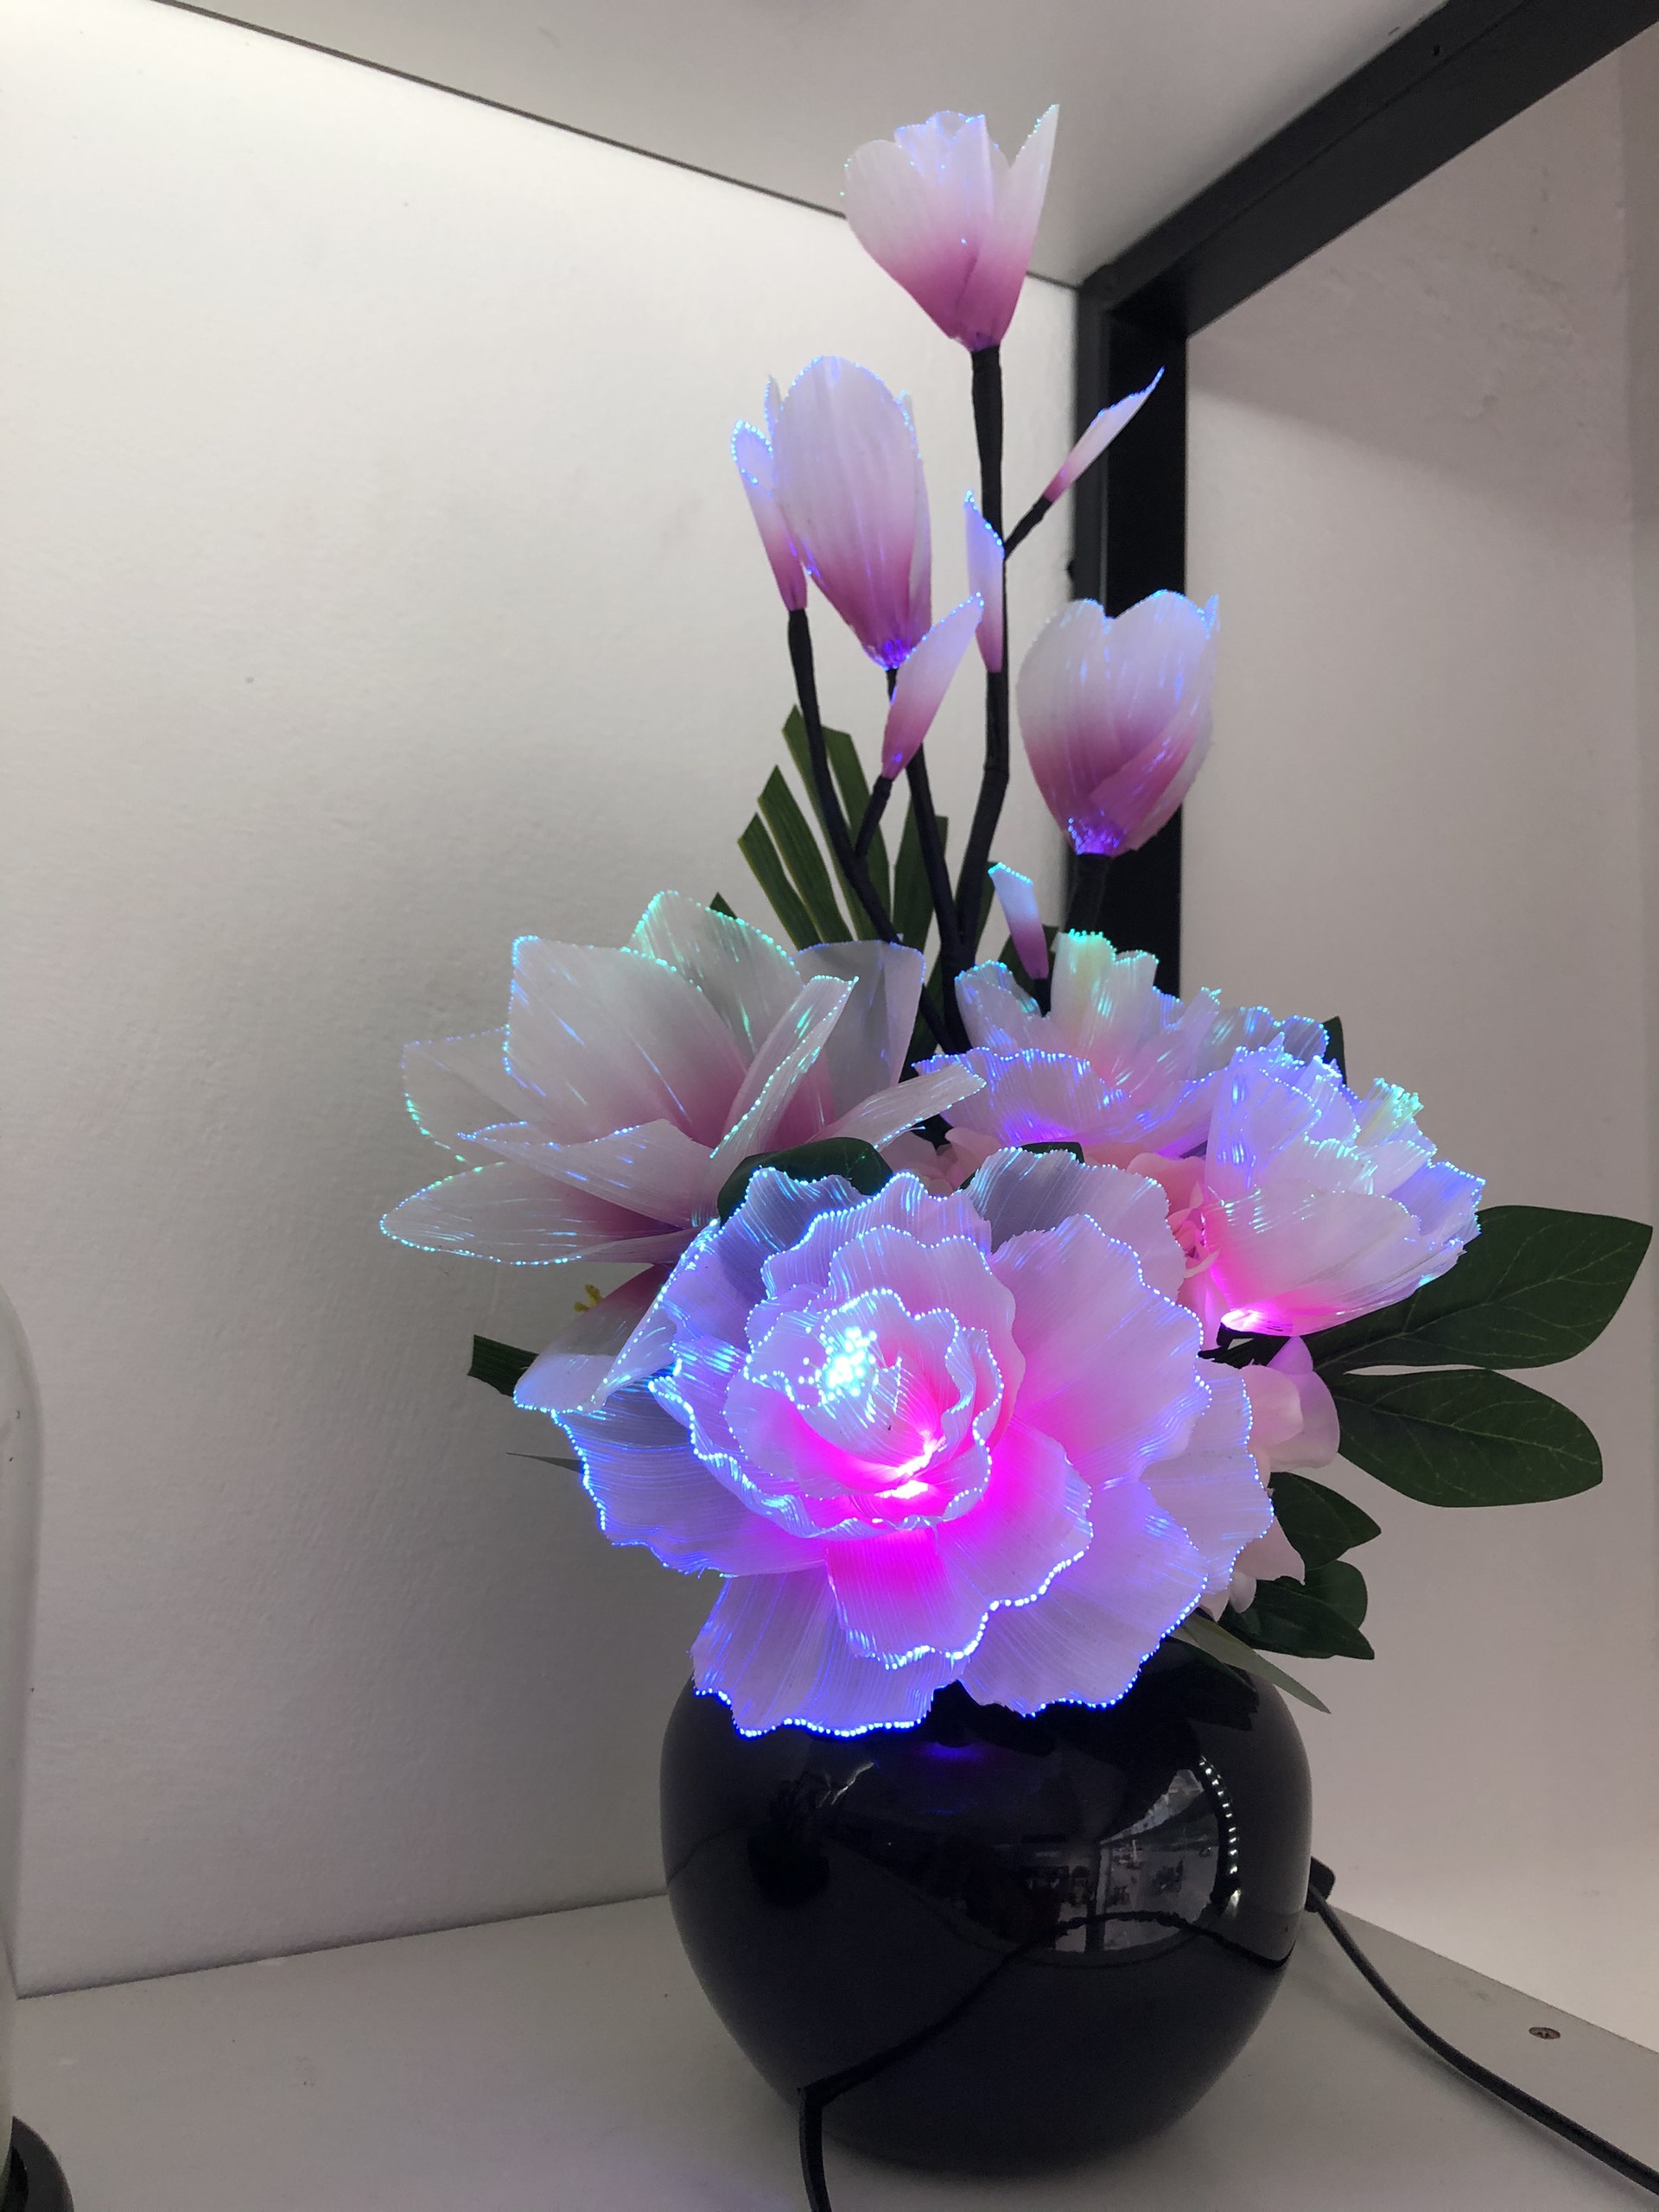 Bình hoa đèn led sợi quang đổi màu - bình hoa trang trí - bình hoa mộc lan cắm điện 220V - BH250